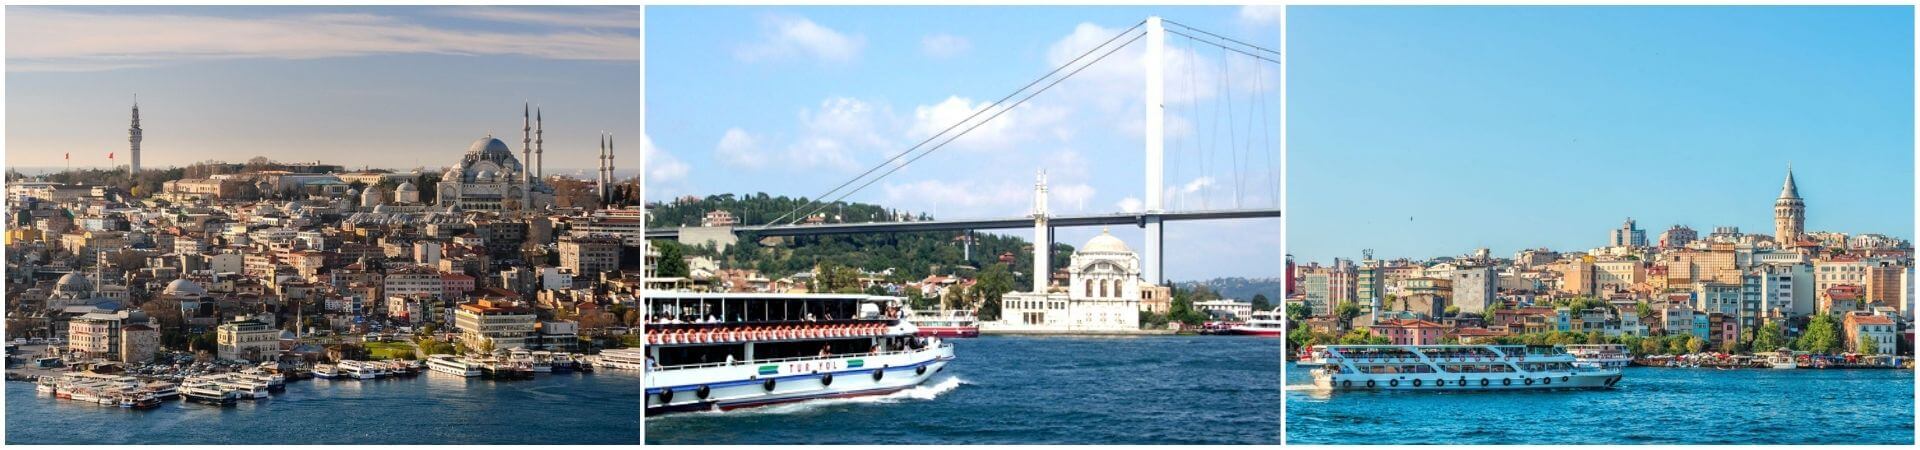 رحلة البوسفور في اسطنبول